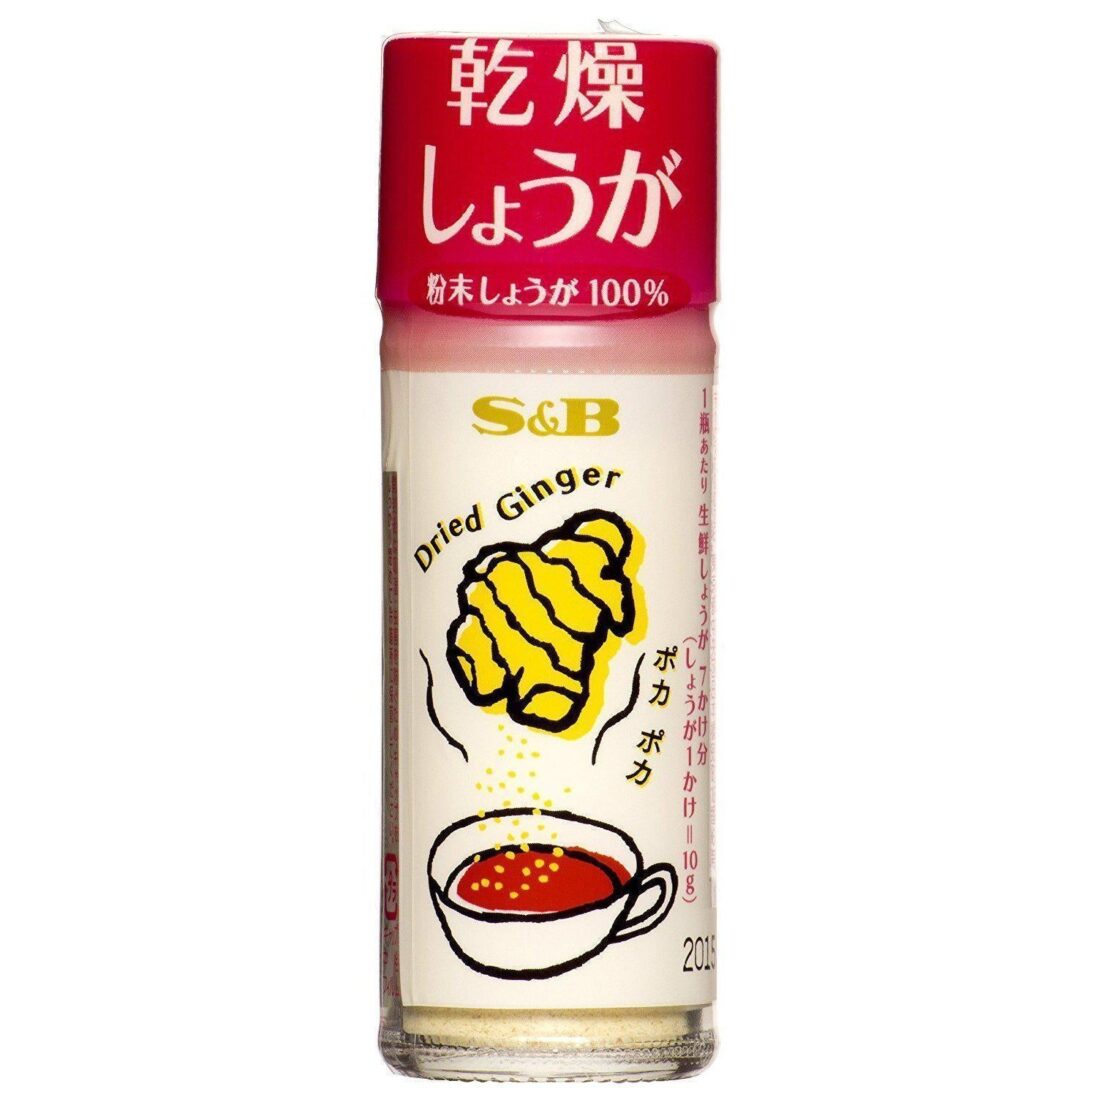 SB-Dried-Ginger-Powder-15g-Japanese-Taste_29f62b17-959f-478c-a9c4-91cd5488264a_2048x.jpg